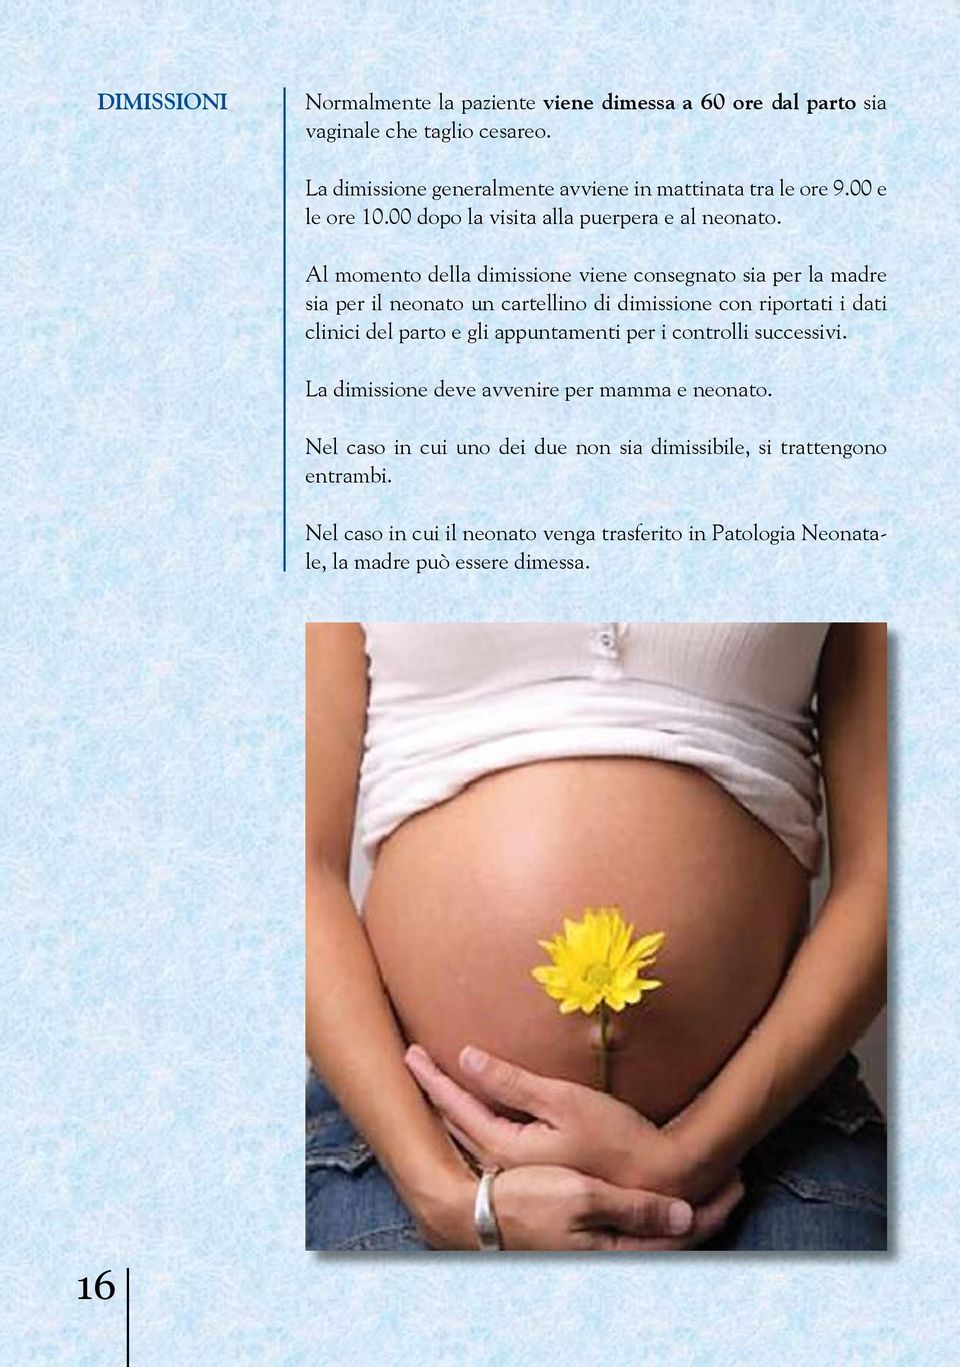 Al momento della dimissione viene consegnato sia per la madre sia per il neonato un cartellino di dimissione con riportati i dati clinici del parto e gli